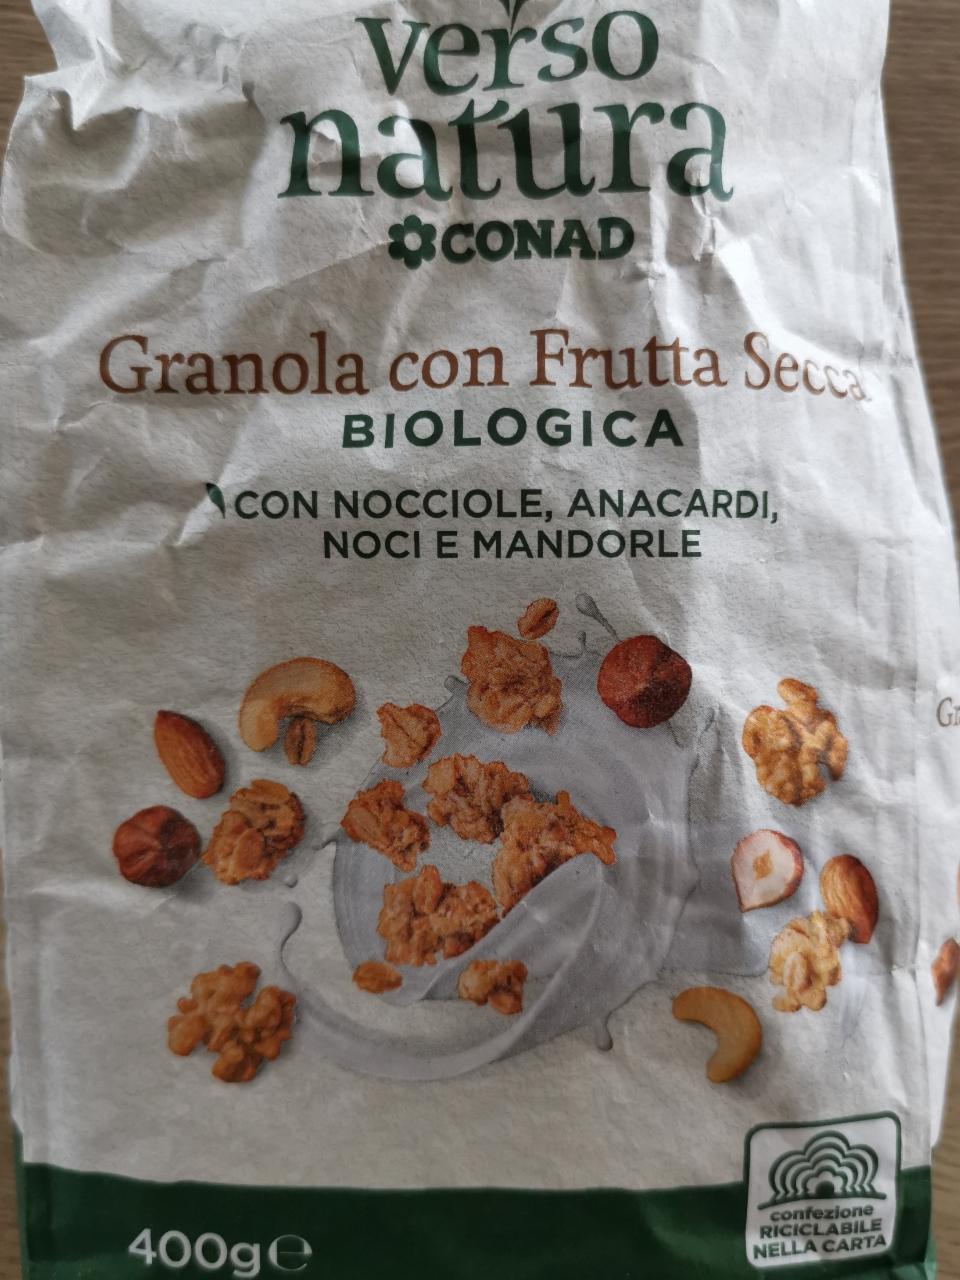 Fotografie - Verso natura Granola con Frutta Secca Conad